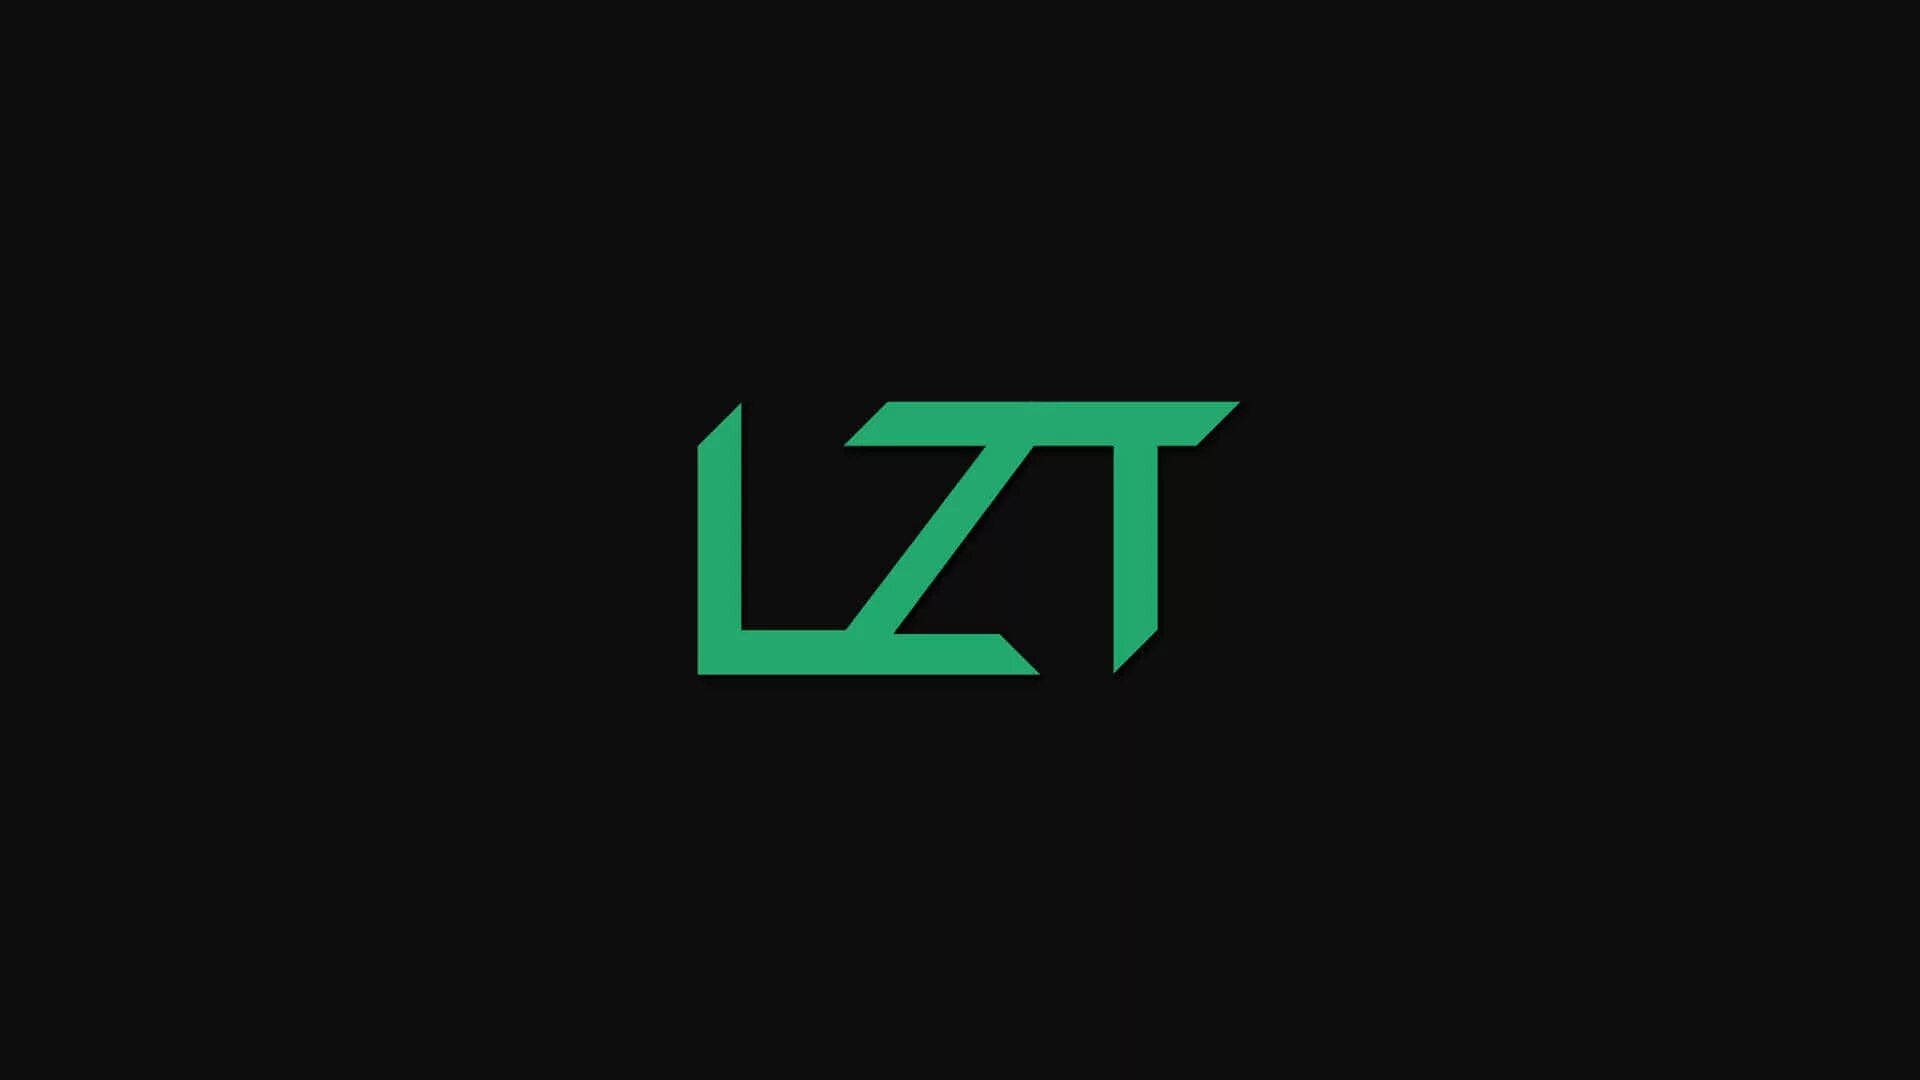 Логотип LZT. Lolz логотип. Иконка lolzteam. Обои lolzteam. Форум lolz